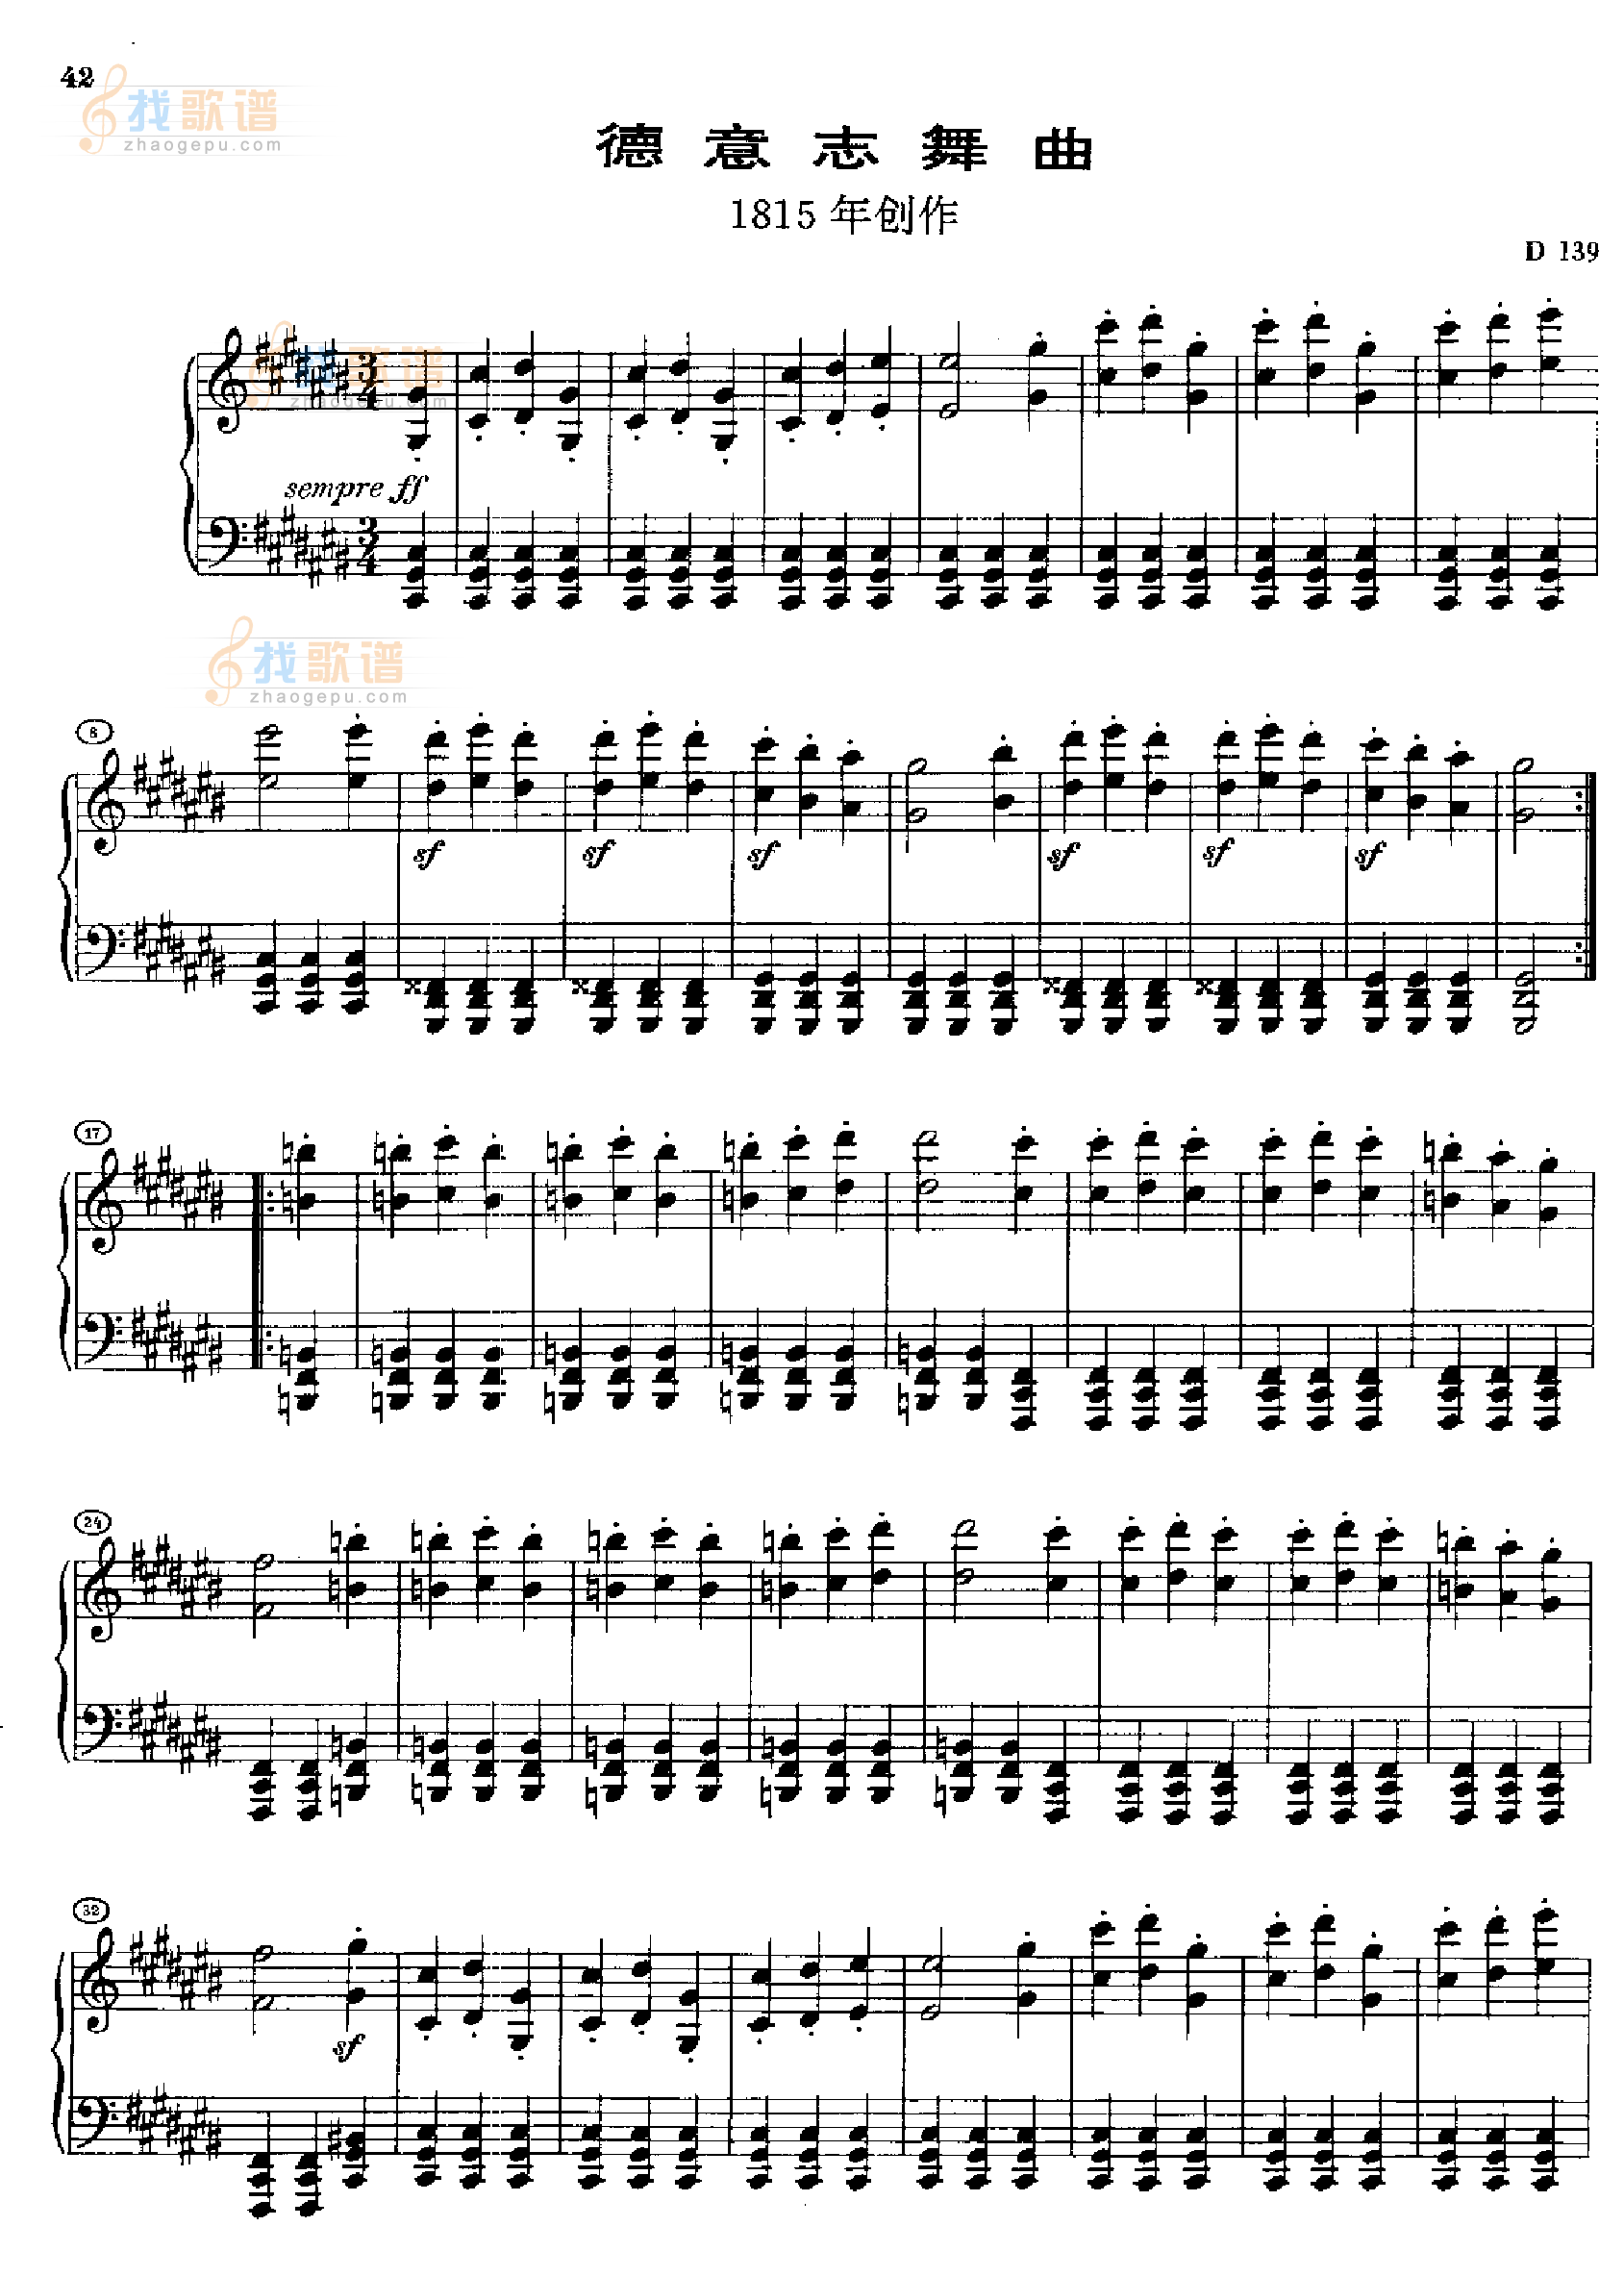 德意志舞曲D139(1815年创作) 